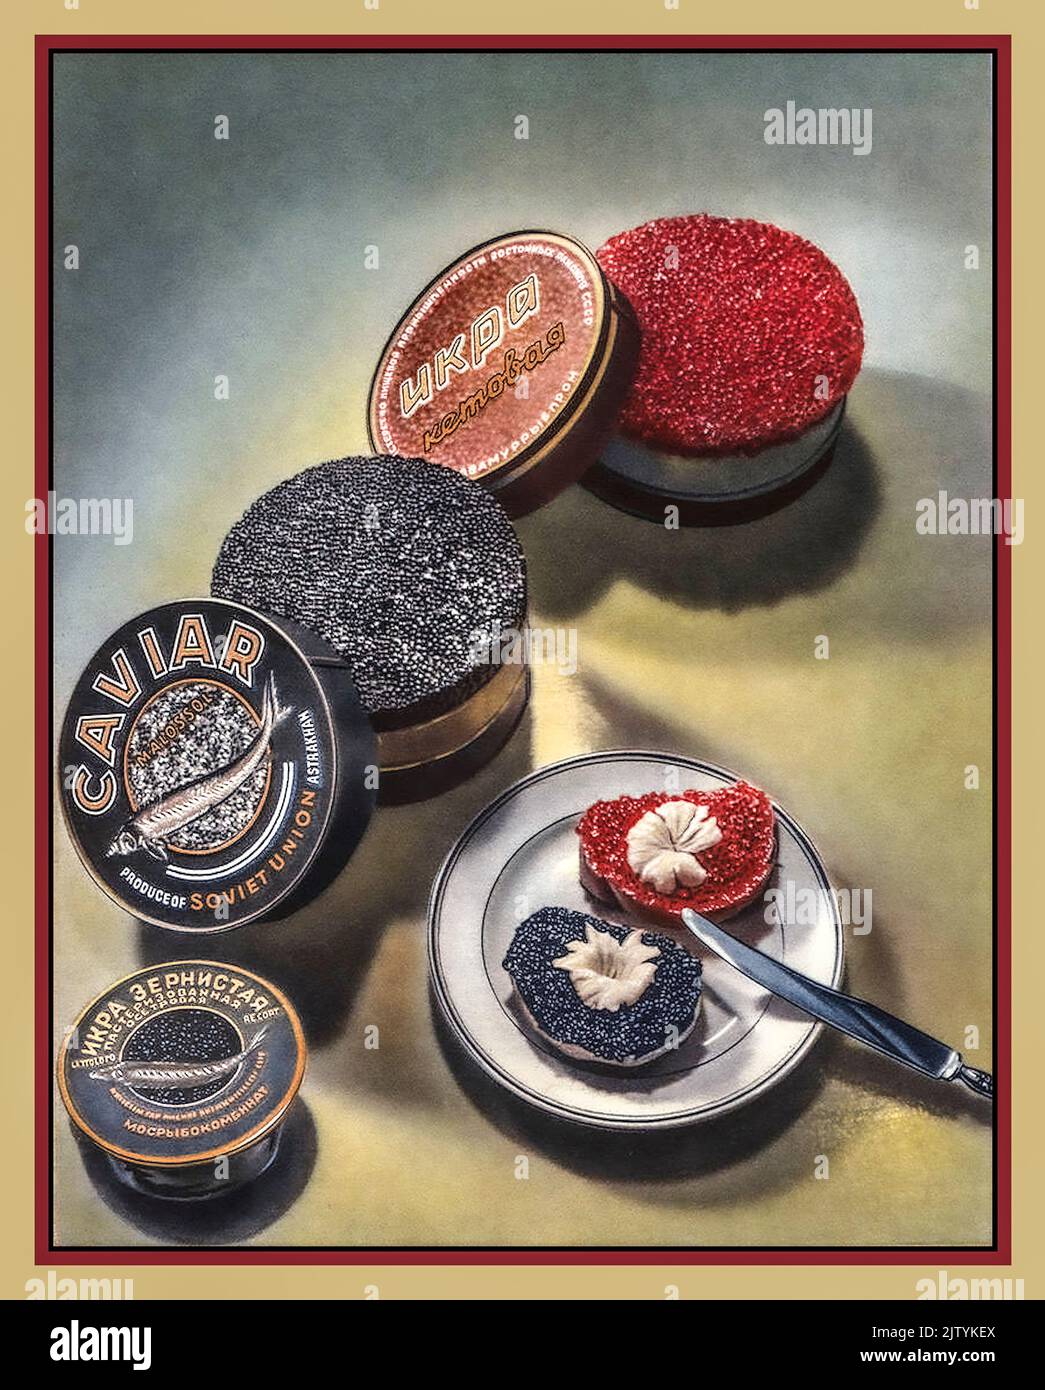 KAVIAR Jahrgang 1950s Sowjetunion Werbeplakat Kaviar Luxus rot & schwarz Sorten in Dosen Russische Spezialität Fisch Lebensmittel. Selten und sehr teuer Stockfoto